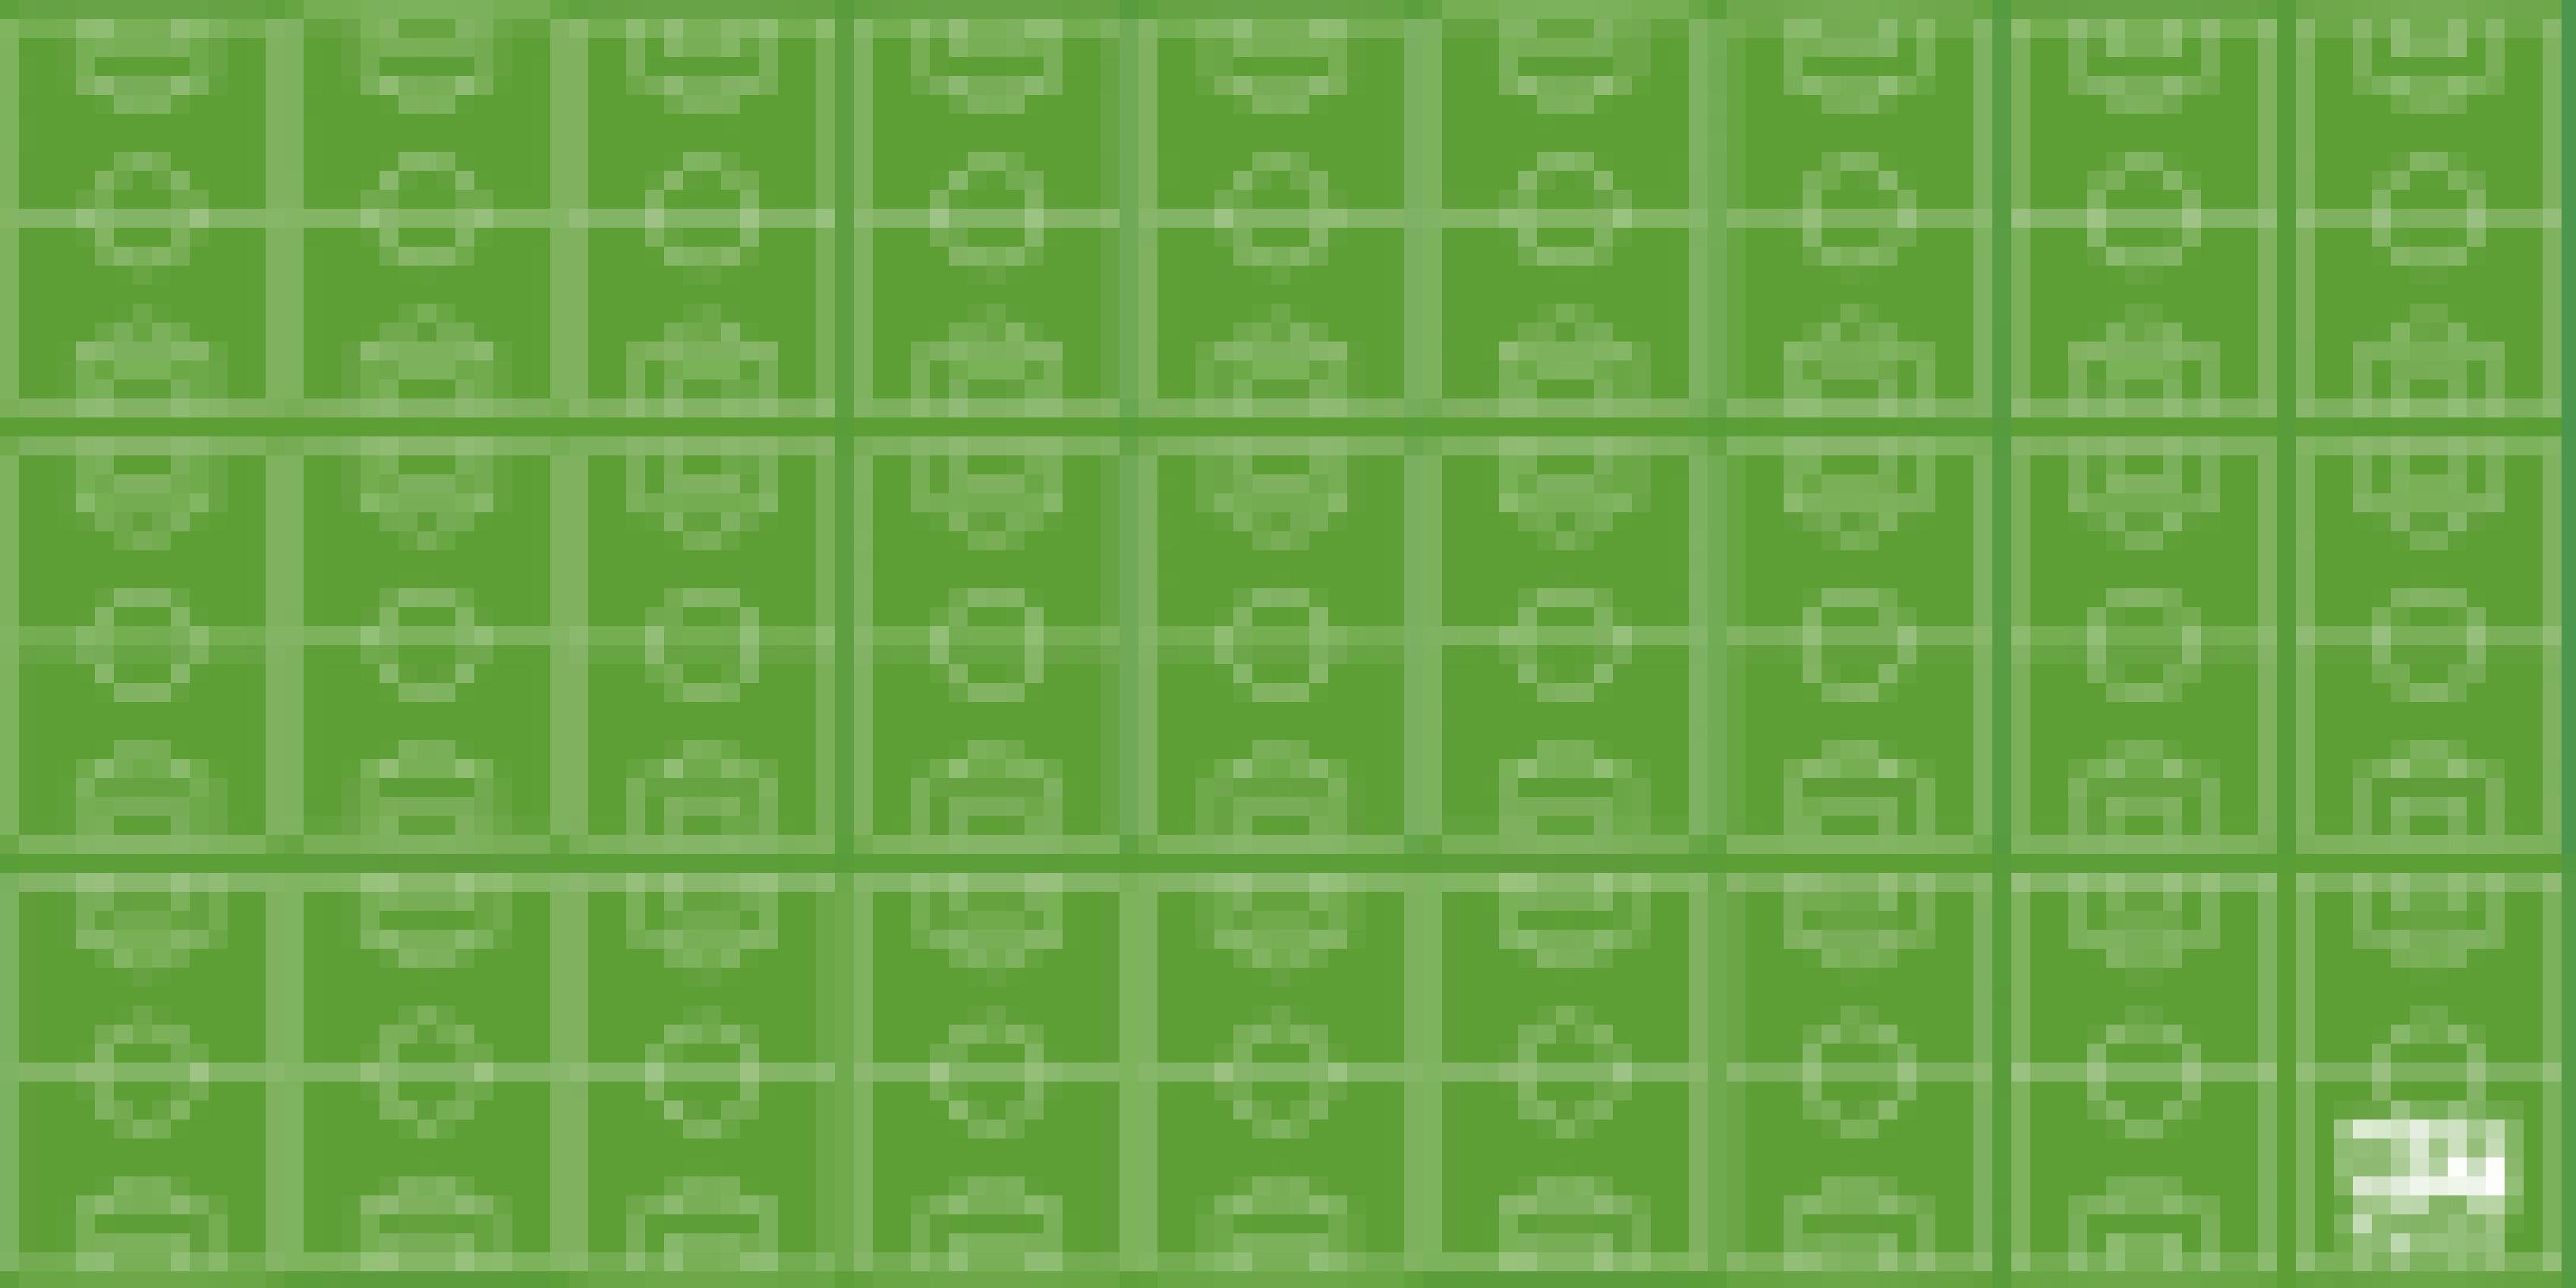 Grafik: 27 Fußballfelder nebeneinander.